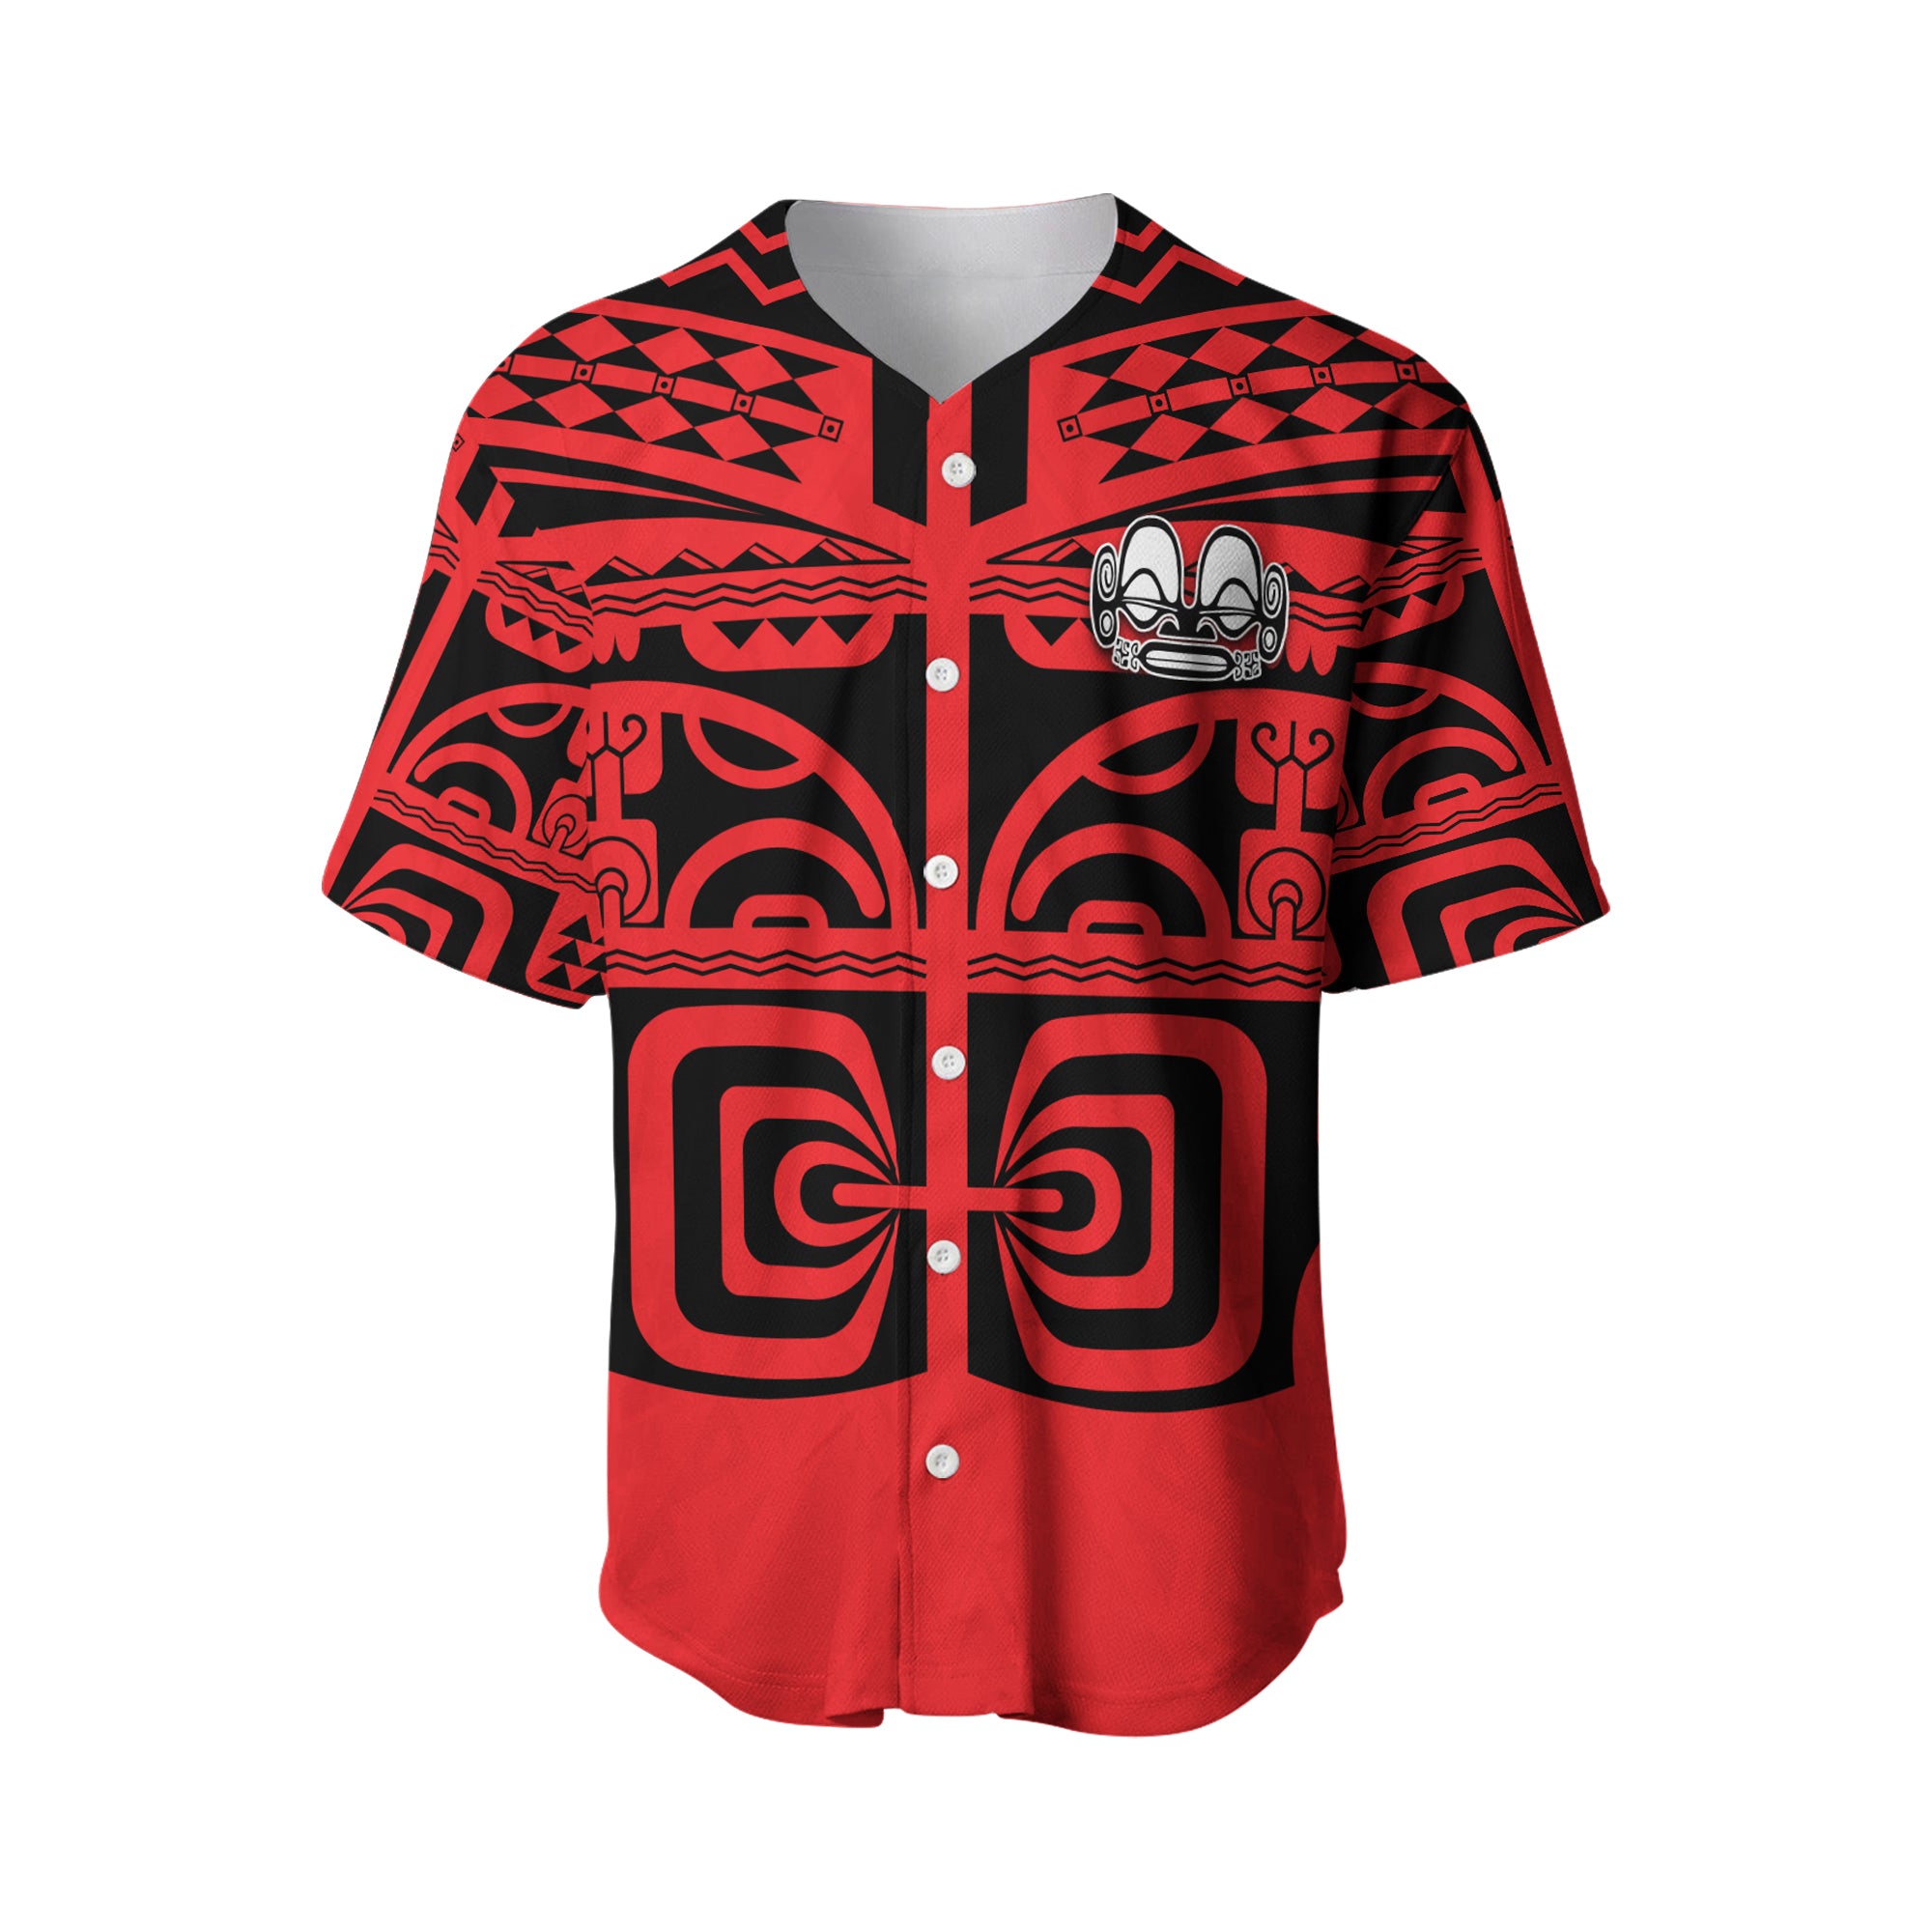 Marquesas Islands Baseball Jersey - Marquesas Tattoo LT13 Red - Polynesian Pride